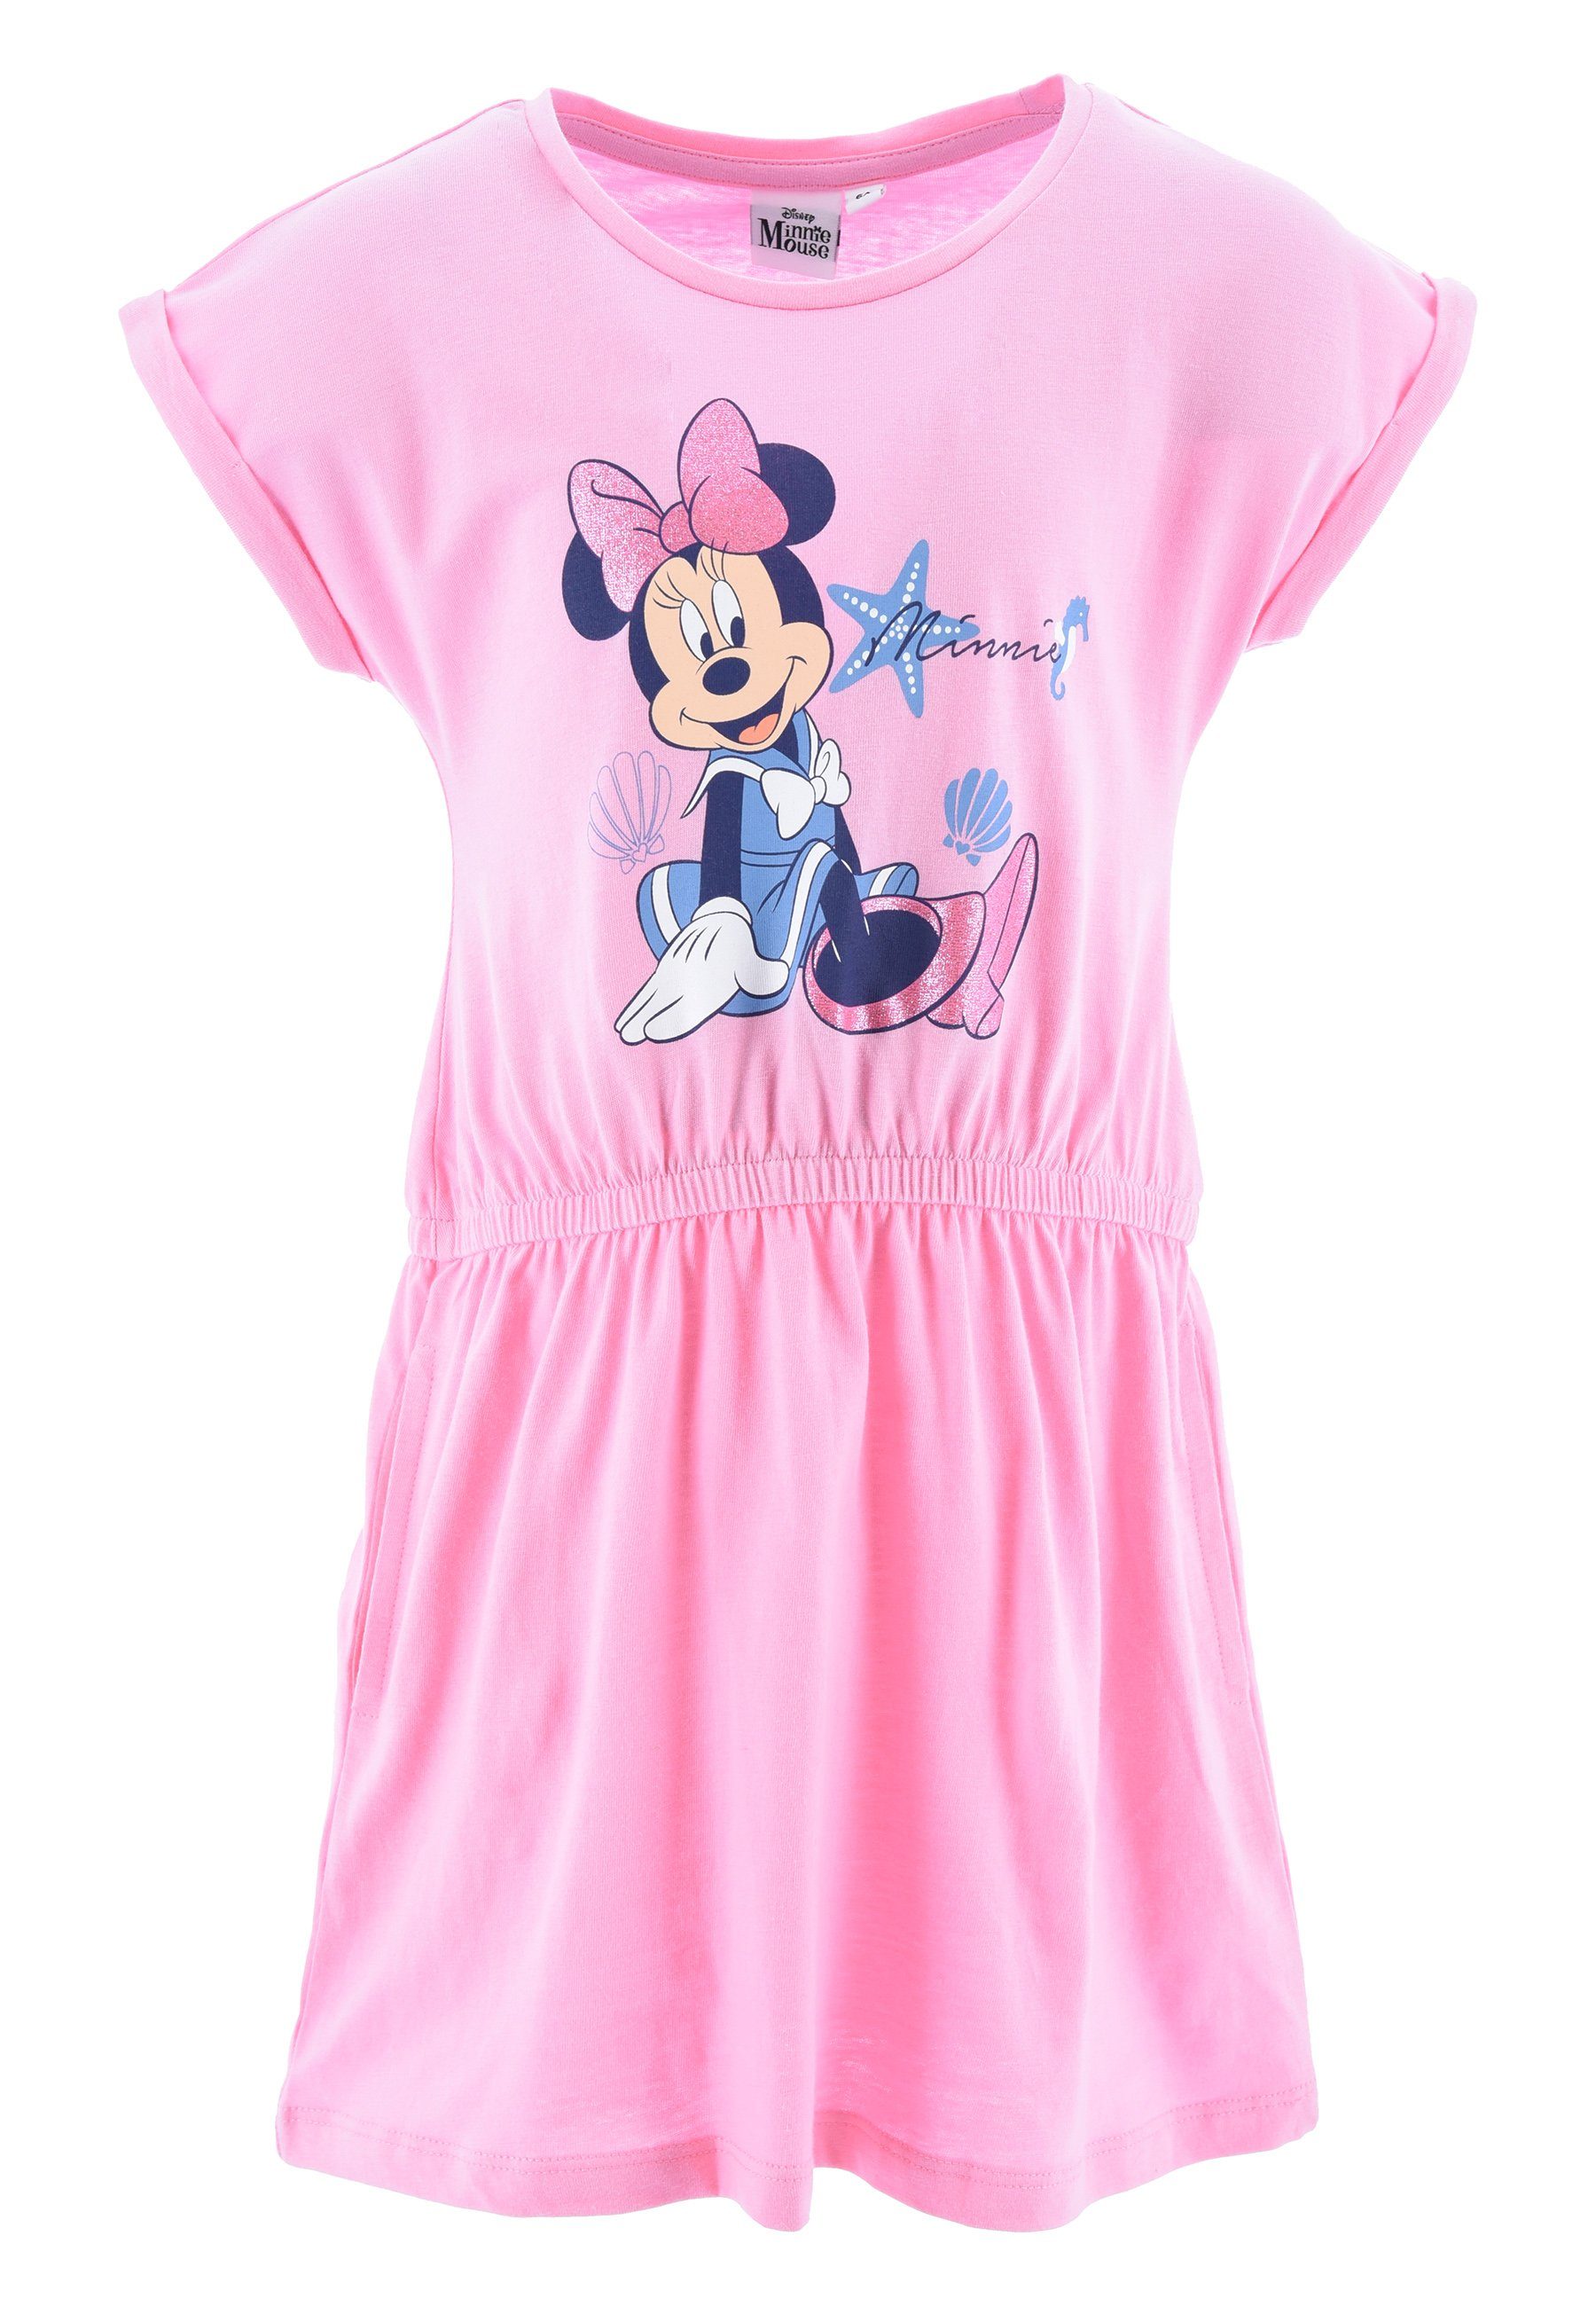 Mouse Sommerkleid kurzarm Disney Mädchen Pink Sommer-Kleid Minnie Strand-Kleid